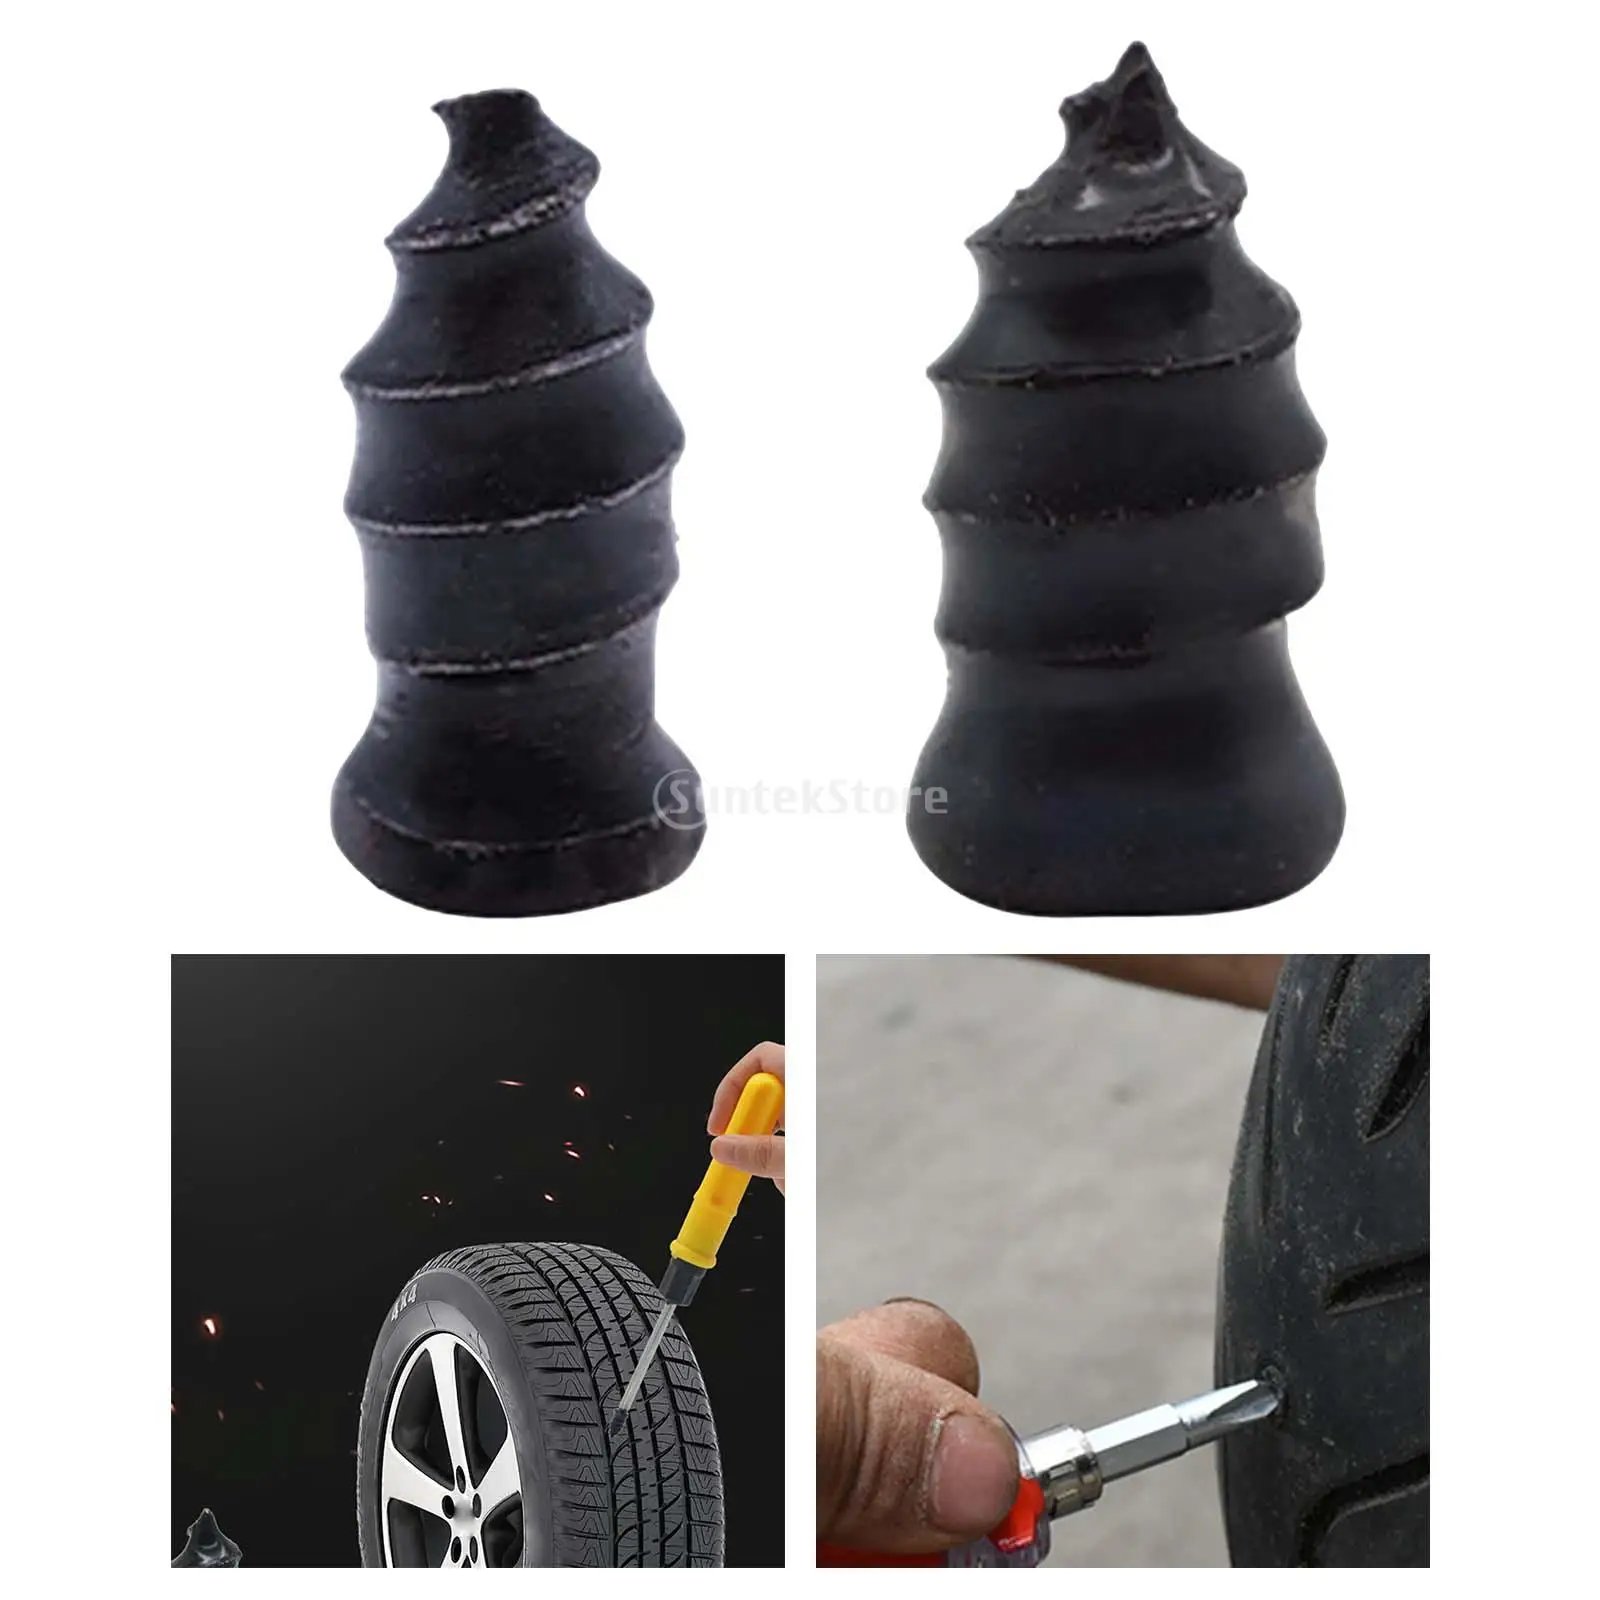 Kaufe 20Pcs Tubeless Reparatur Reifen Nägel Vakuum Auto Zubehör Langlebig  Auto Tubeless Dichtung Nagel für Auto